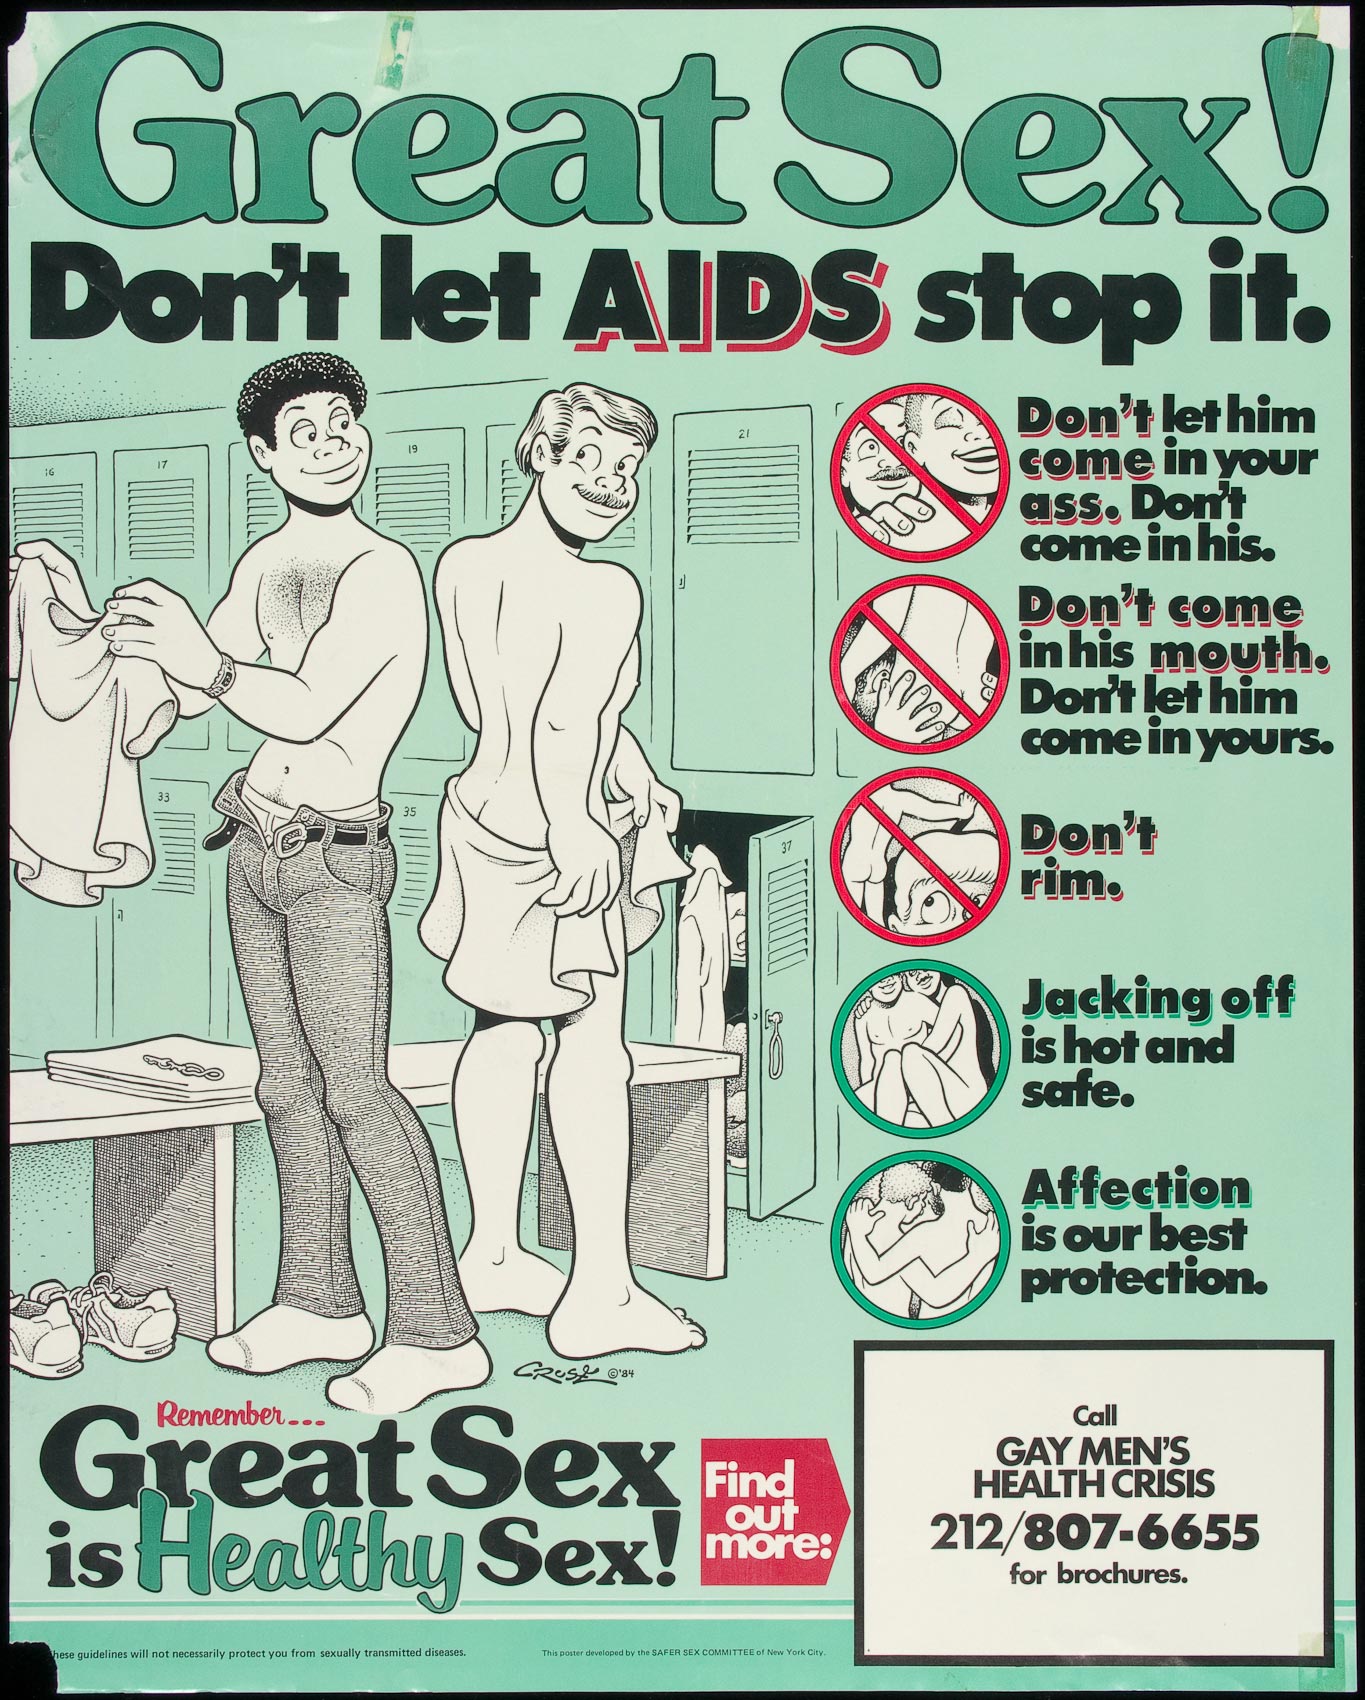 Safe sex poster